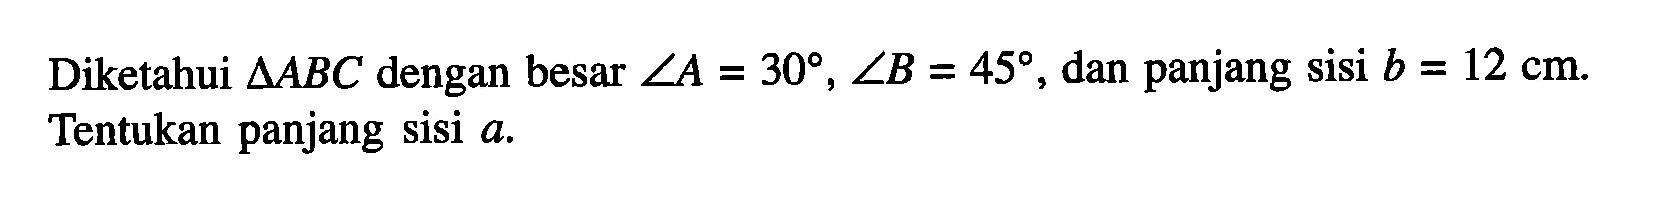 Diketahui Segitiga ABC dengan besar sudut A = 30, sudut B = 45, dan panjang sisi b = 12 cm. Tentukan panjang sisi a.